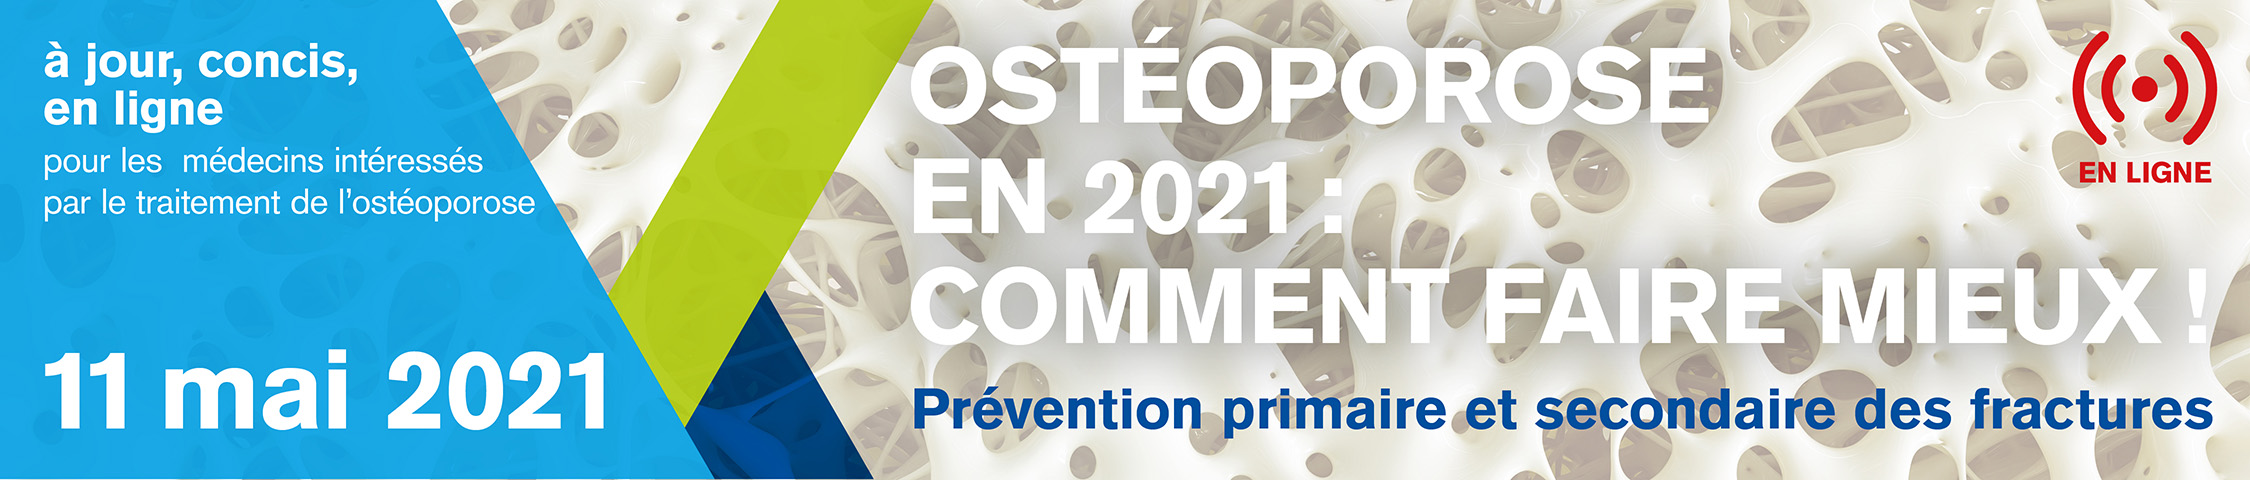 OSTÉOPOROSE EN 2021 : COMMENT FAIRE MIEUX !